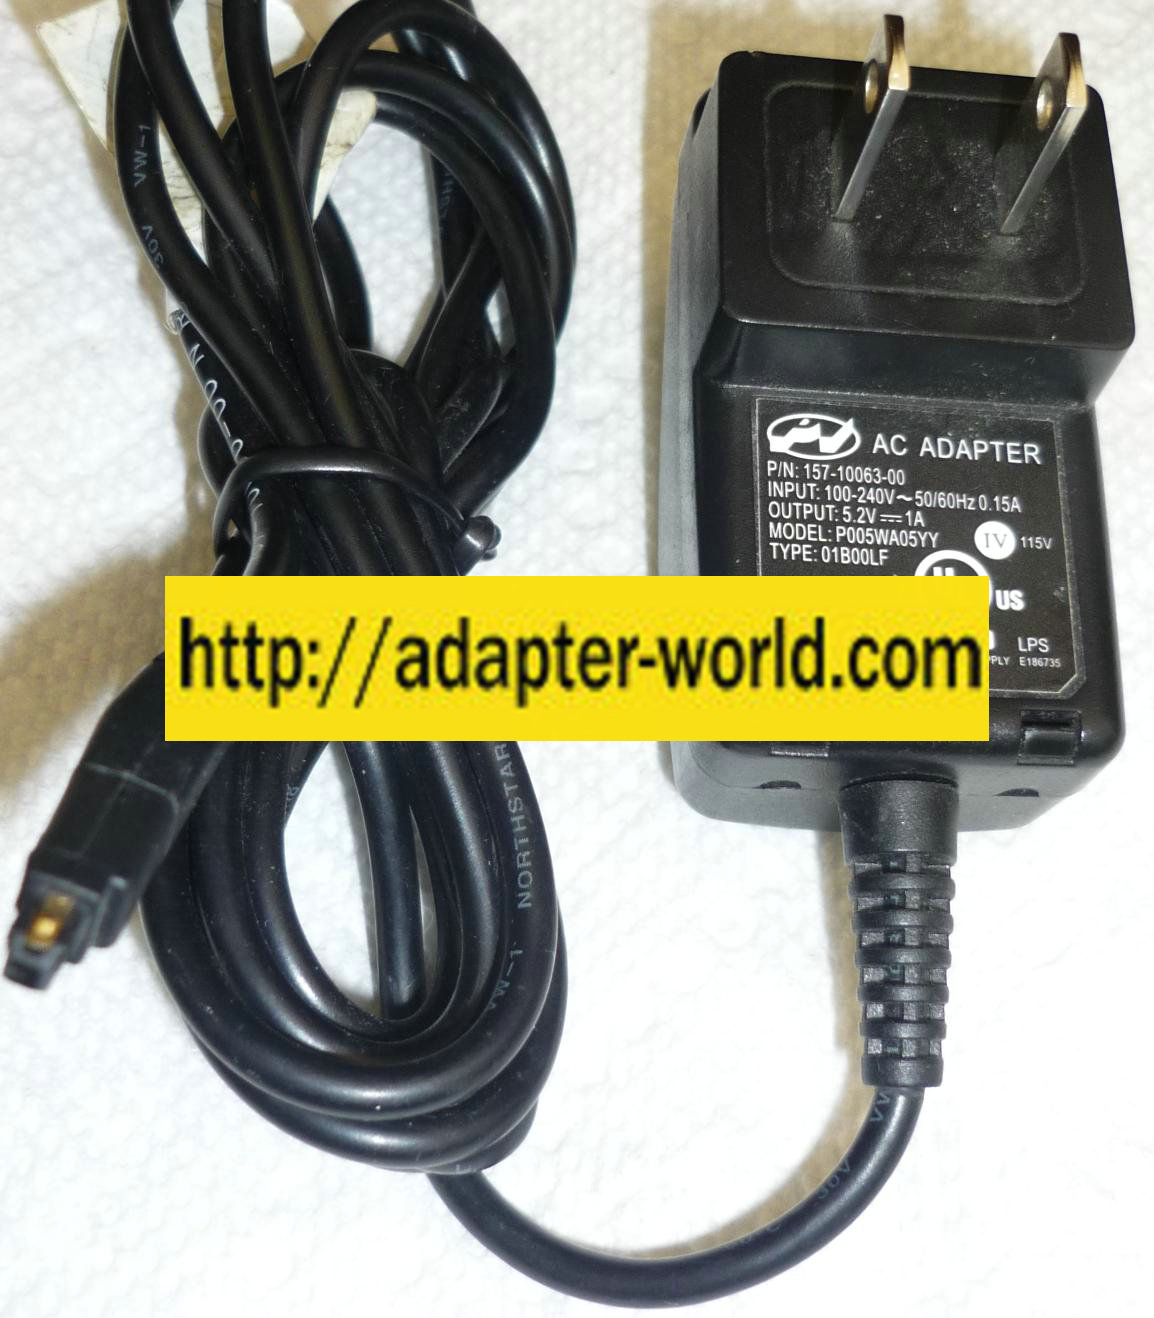 P005WA05YY AC ADAPTER 5.2VDC NEW 1A 100-240v~50-60z 0.15A 157 - Click Image to Close